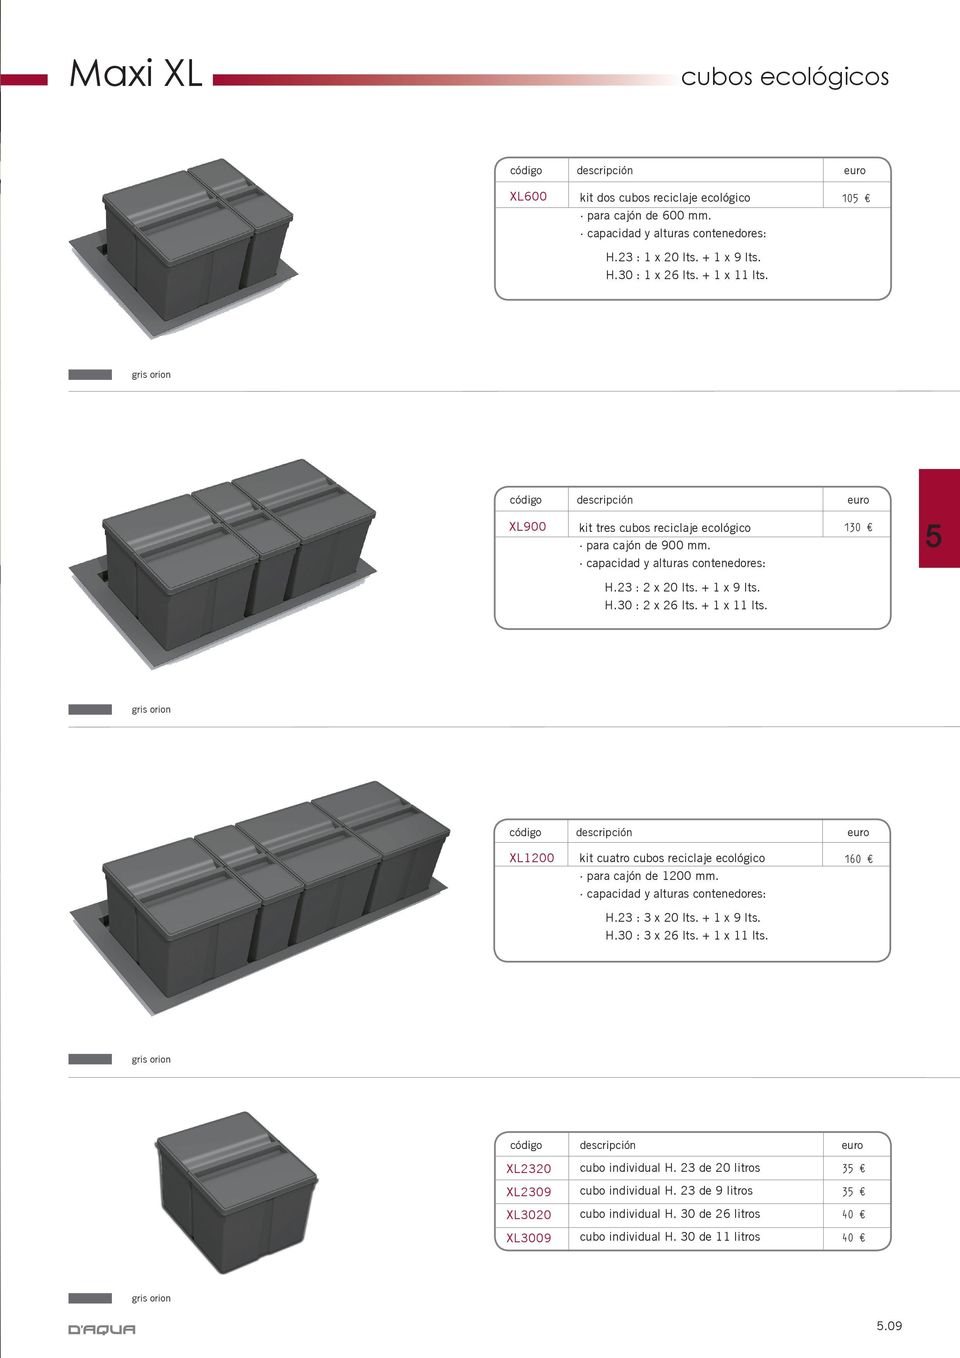 gris orion XL1200 kit cuatro cubos reciclaje ecológico para cajón de 1200 mm. capacidad y alturas contenedores: H.23 : 3 x 20 lts. + 1 x 9 lts. H.30 : 3 x 26 lts. + 1 x 11 lts.